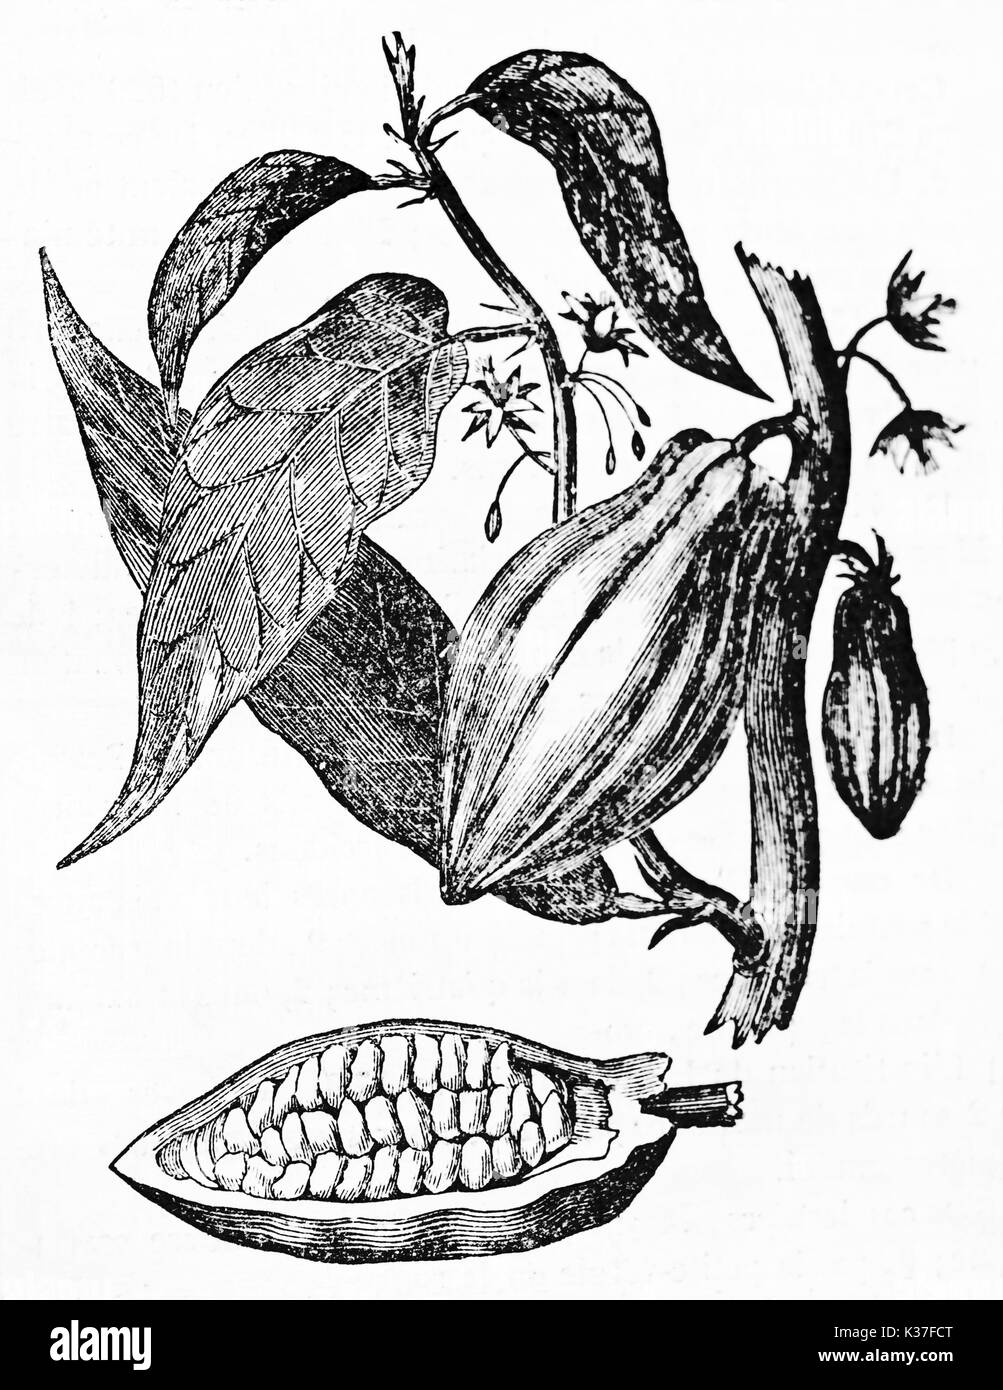 Alte botanische isoliert Abbildung des Kakaobaums, Blumen, Früchte und Blätter. Alte Illustration von unbekannter Autor auf Magasin Pittoresque Paris 1834 veröffentlicht. Stockfoto